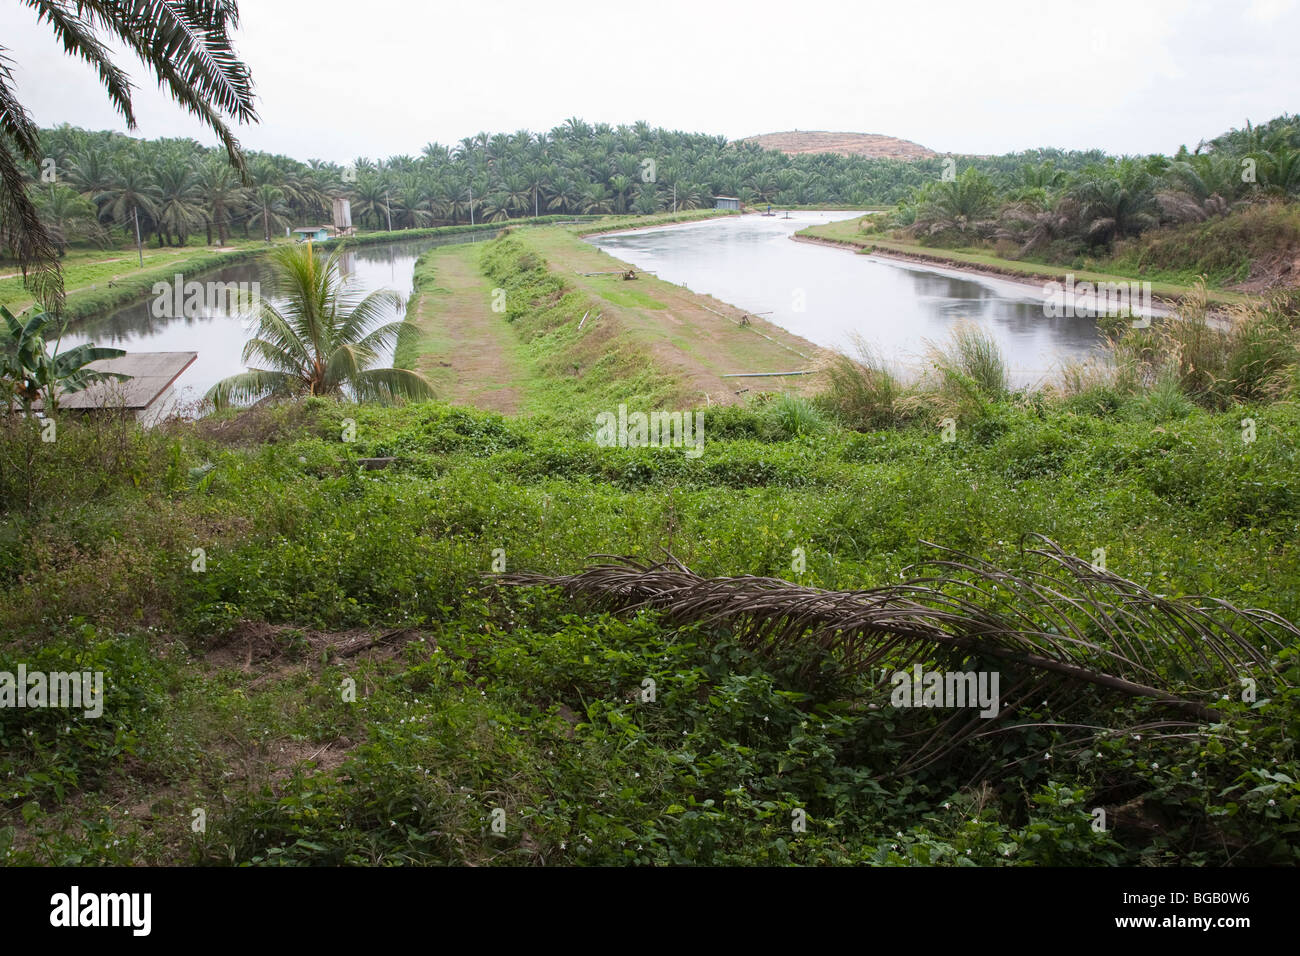 Les bassins anaérobies tenir palm oil mill effluent. Le moulin à huile de palme Sindora, Malaisie Banque D'Images